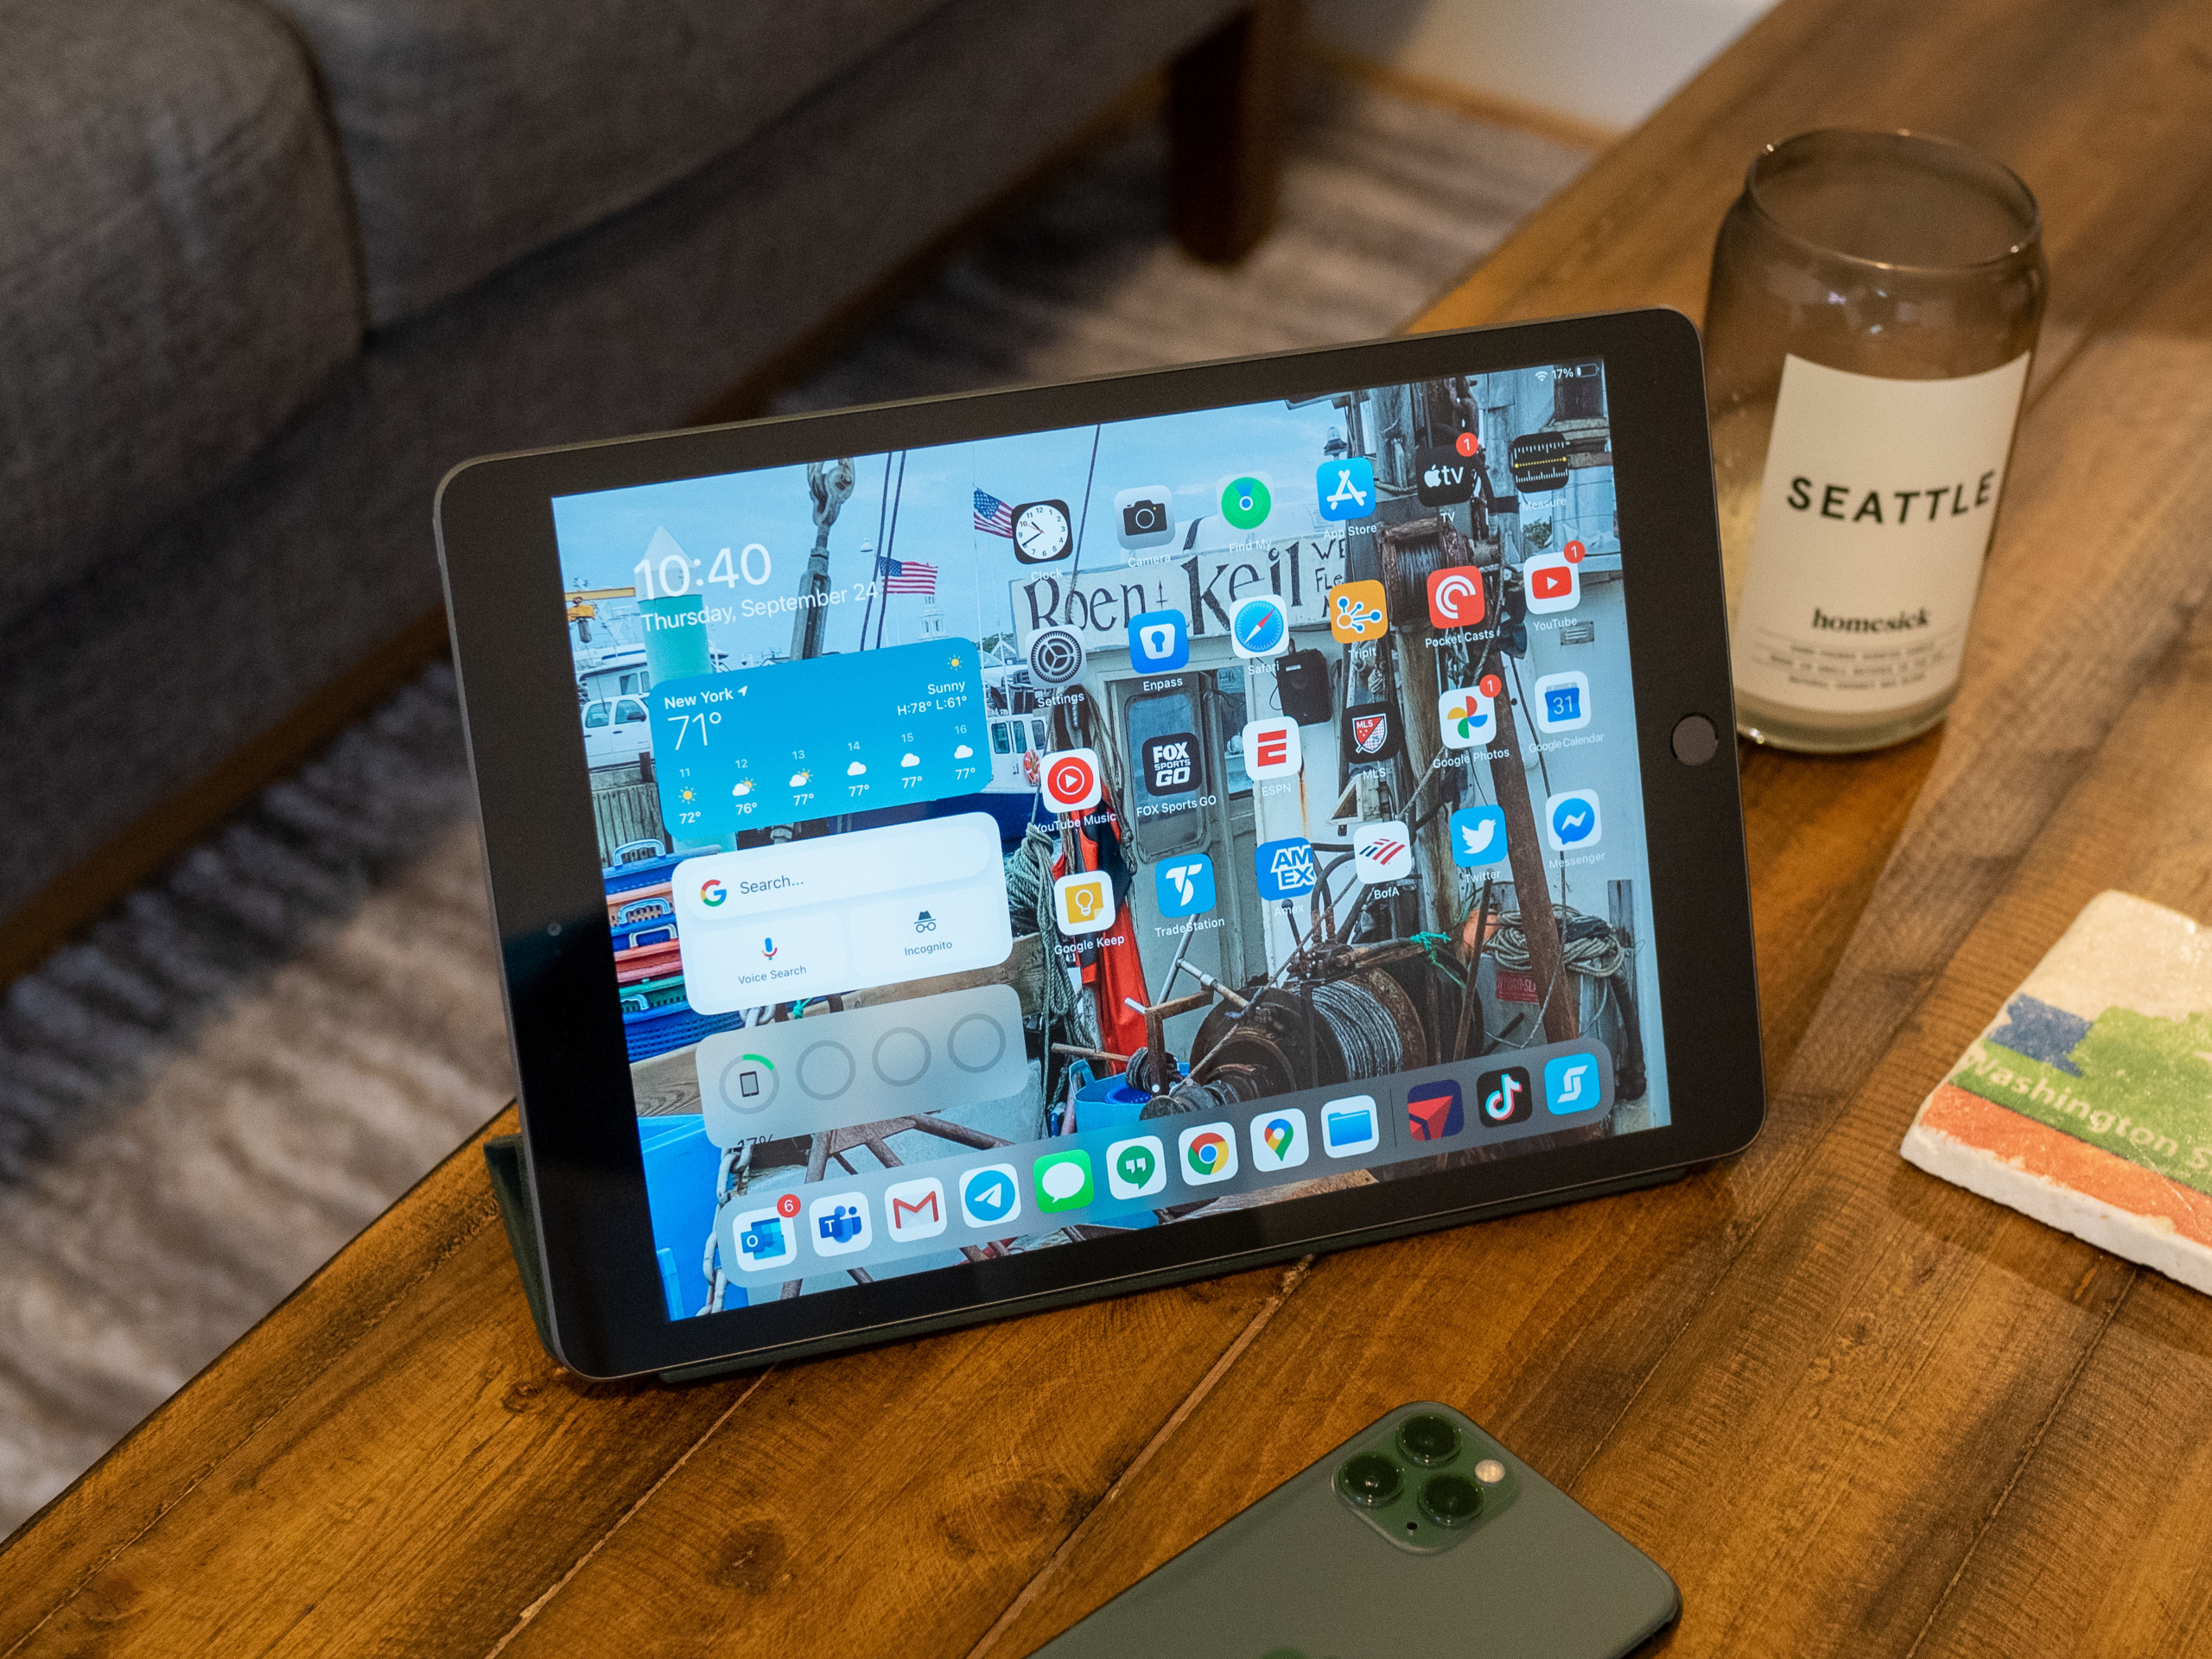 iPad (2020) on table.